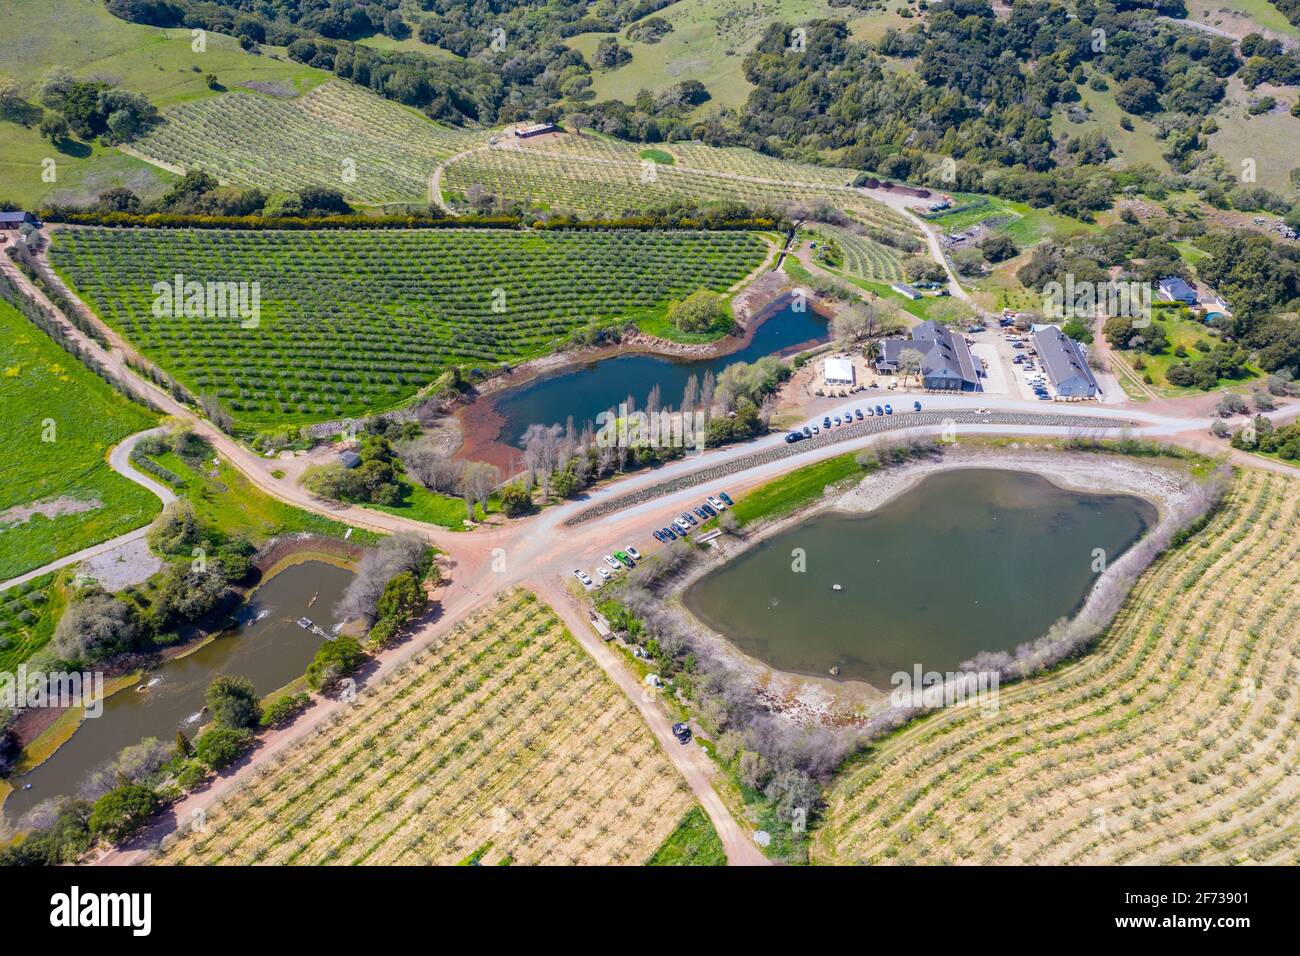 McEvoy Ranch, Winery and Olive farm, Petaluma, California, USA Stock Photo